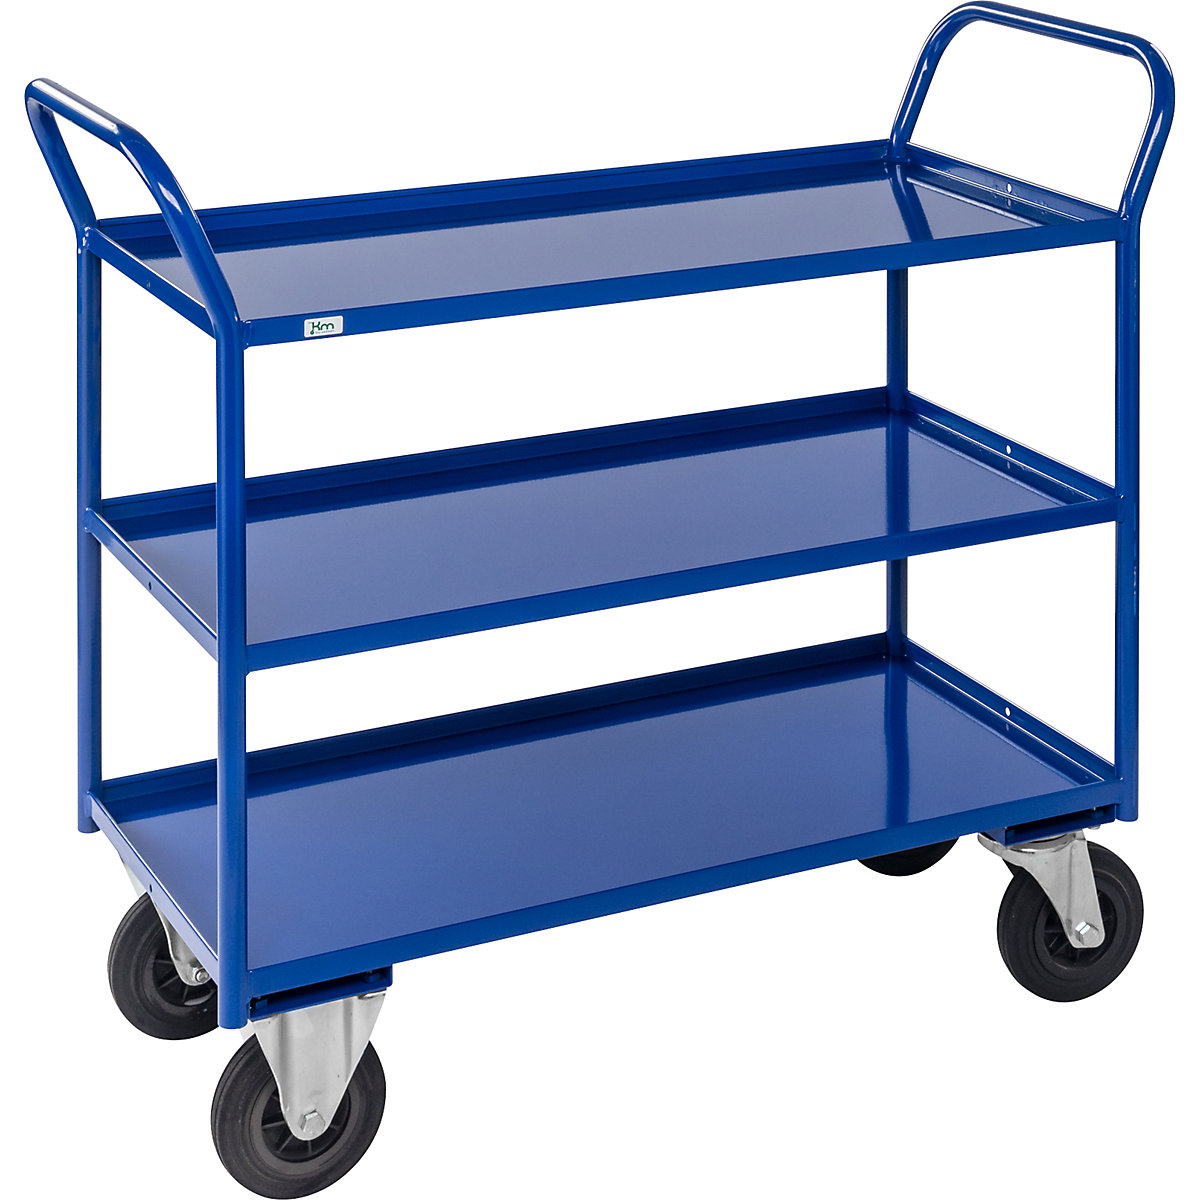 Stolový vozík KM41 – Kongamek, 3 poschodia s ohranením, d x š x v 1080 x 450 x 1000 mm, modrá, 2 otočné kolieska s brzdou, 2 pevné kolieska, od 5 ks-4